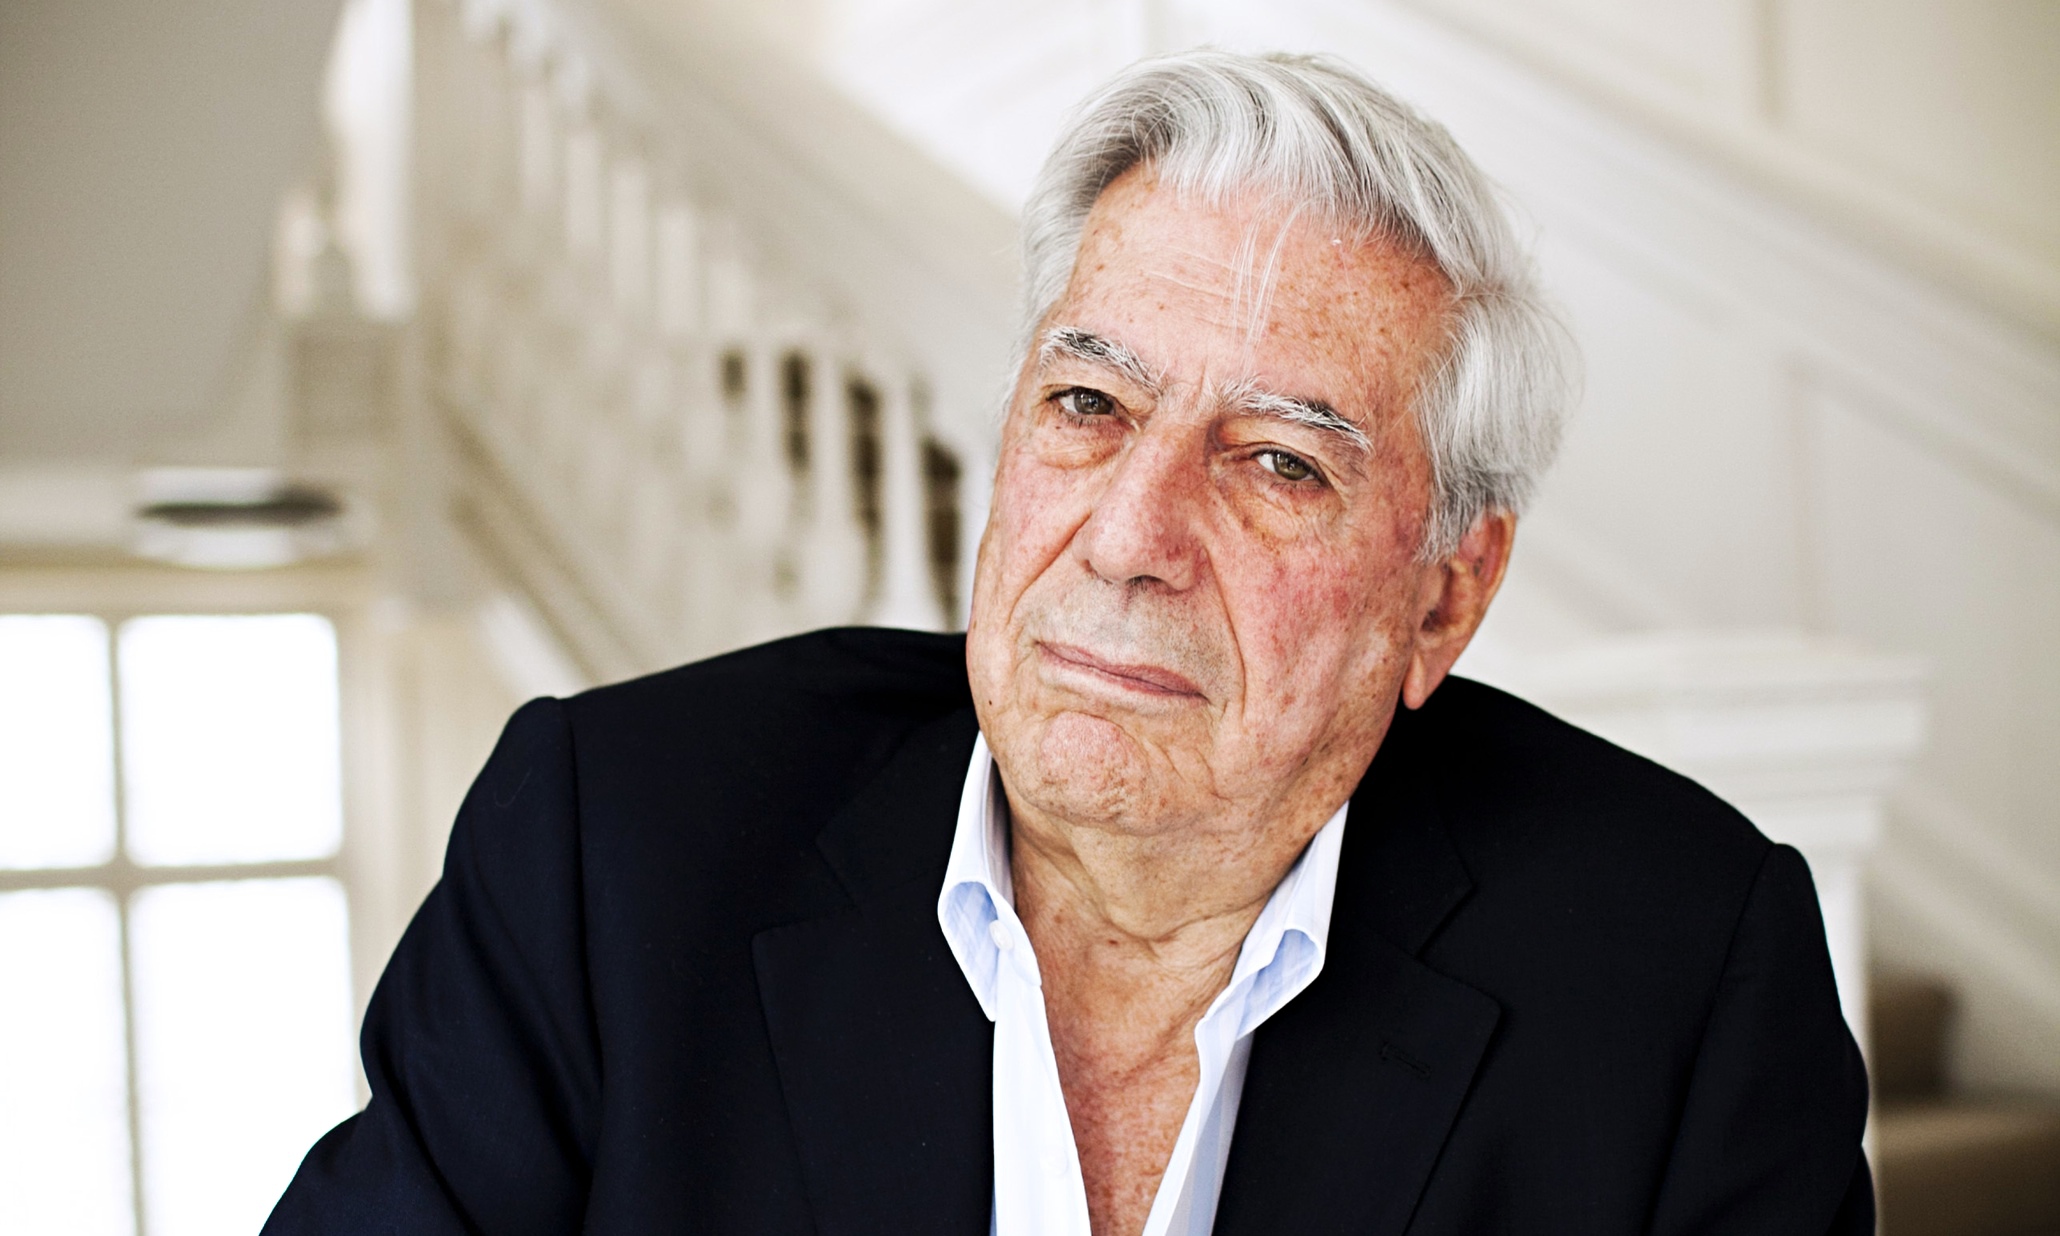 Jorge Mario Pedro Vargas Llosa, 1st Marquis of Vargas Llosa, more commonly known as Mario Vargas Llosa